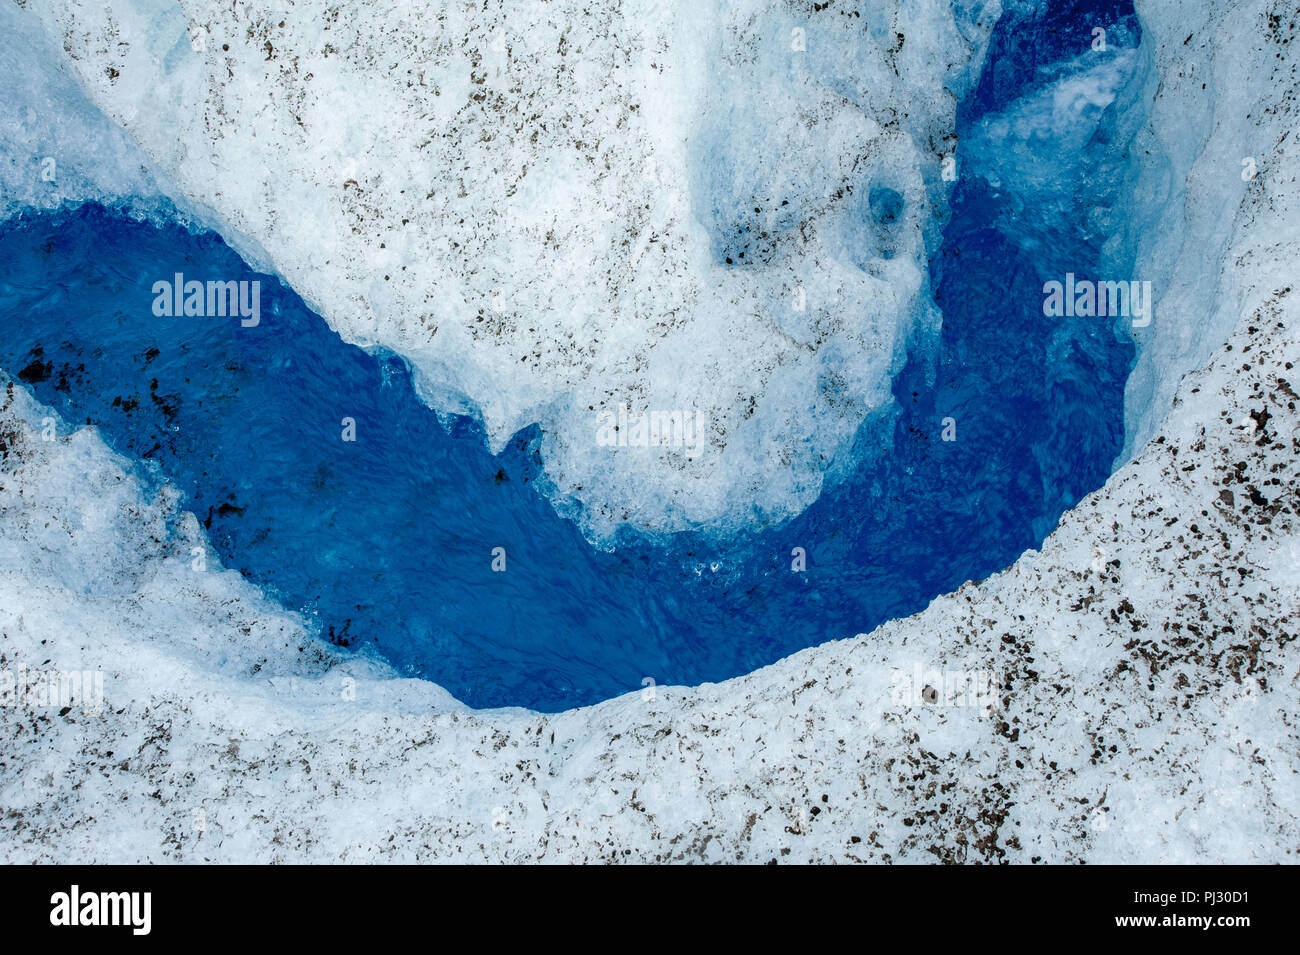 Gletscher Helikopter-tour - Juneau Alaska Kreuzfahrt Schiff Ausflug über die Juneau Icefield Landung auf Gilkey Gletscher - atemberaubend blauen eiszeitliche Schmelzwasser Stockfoto